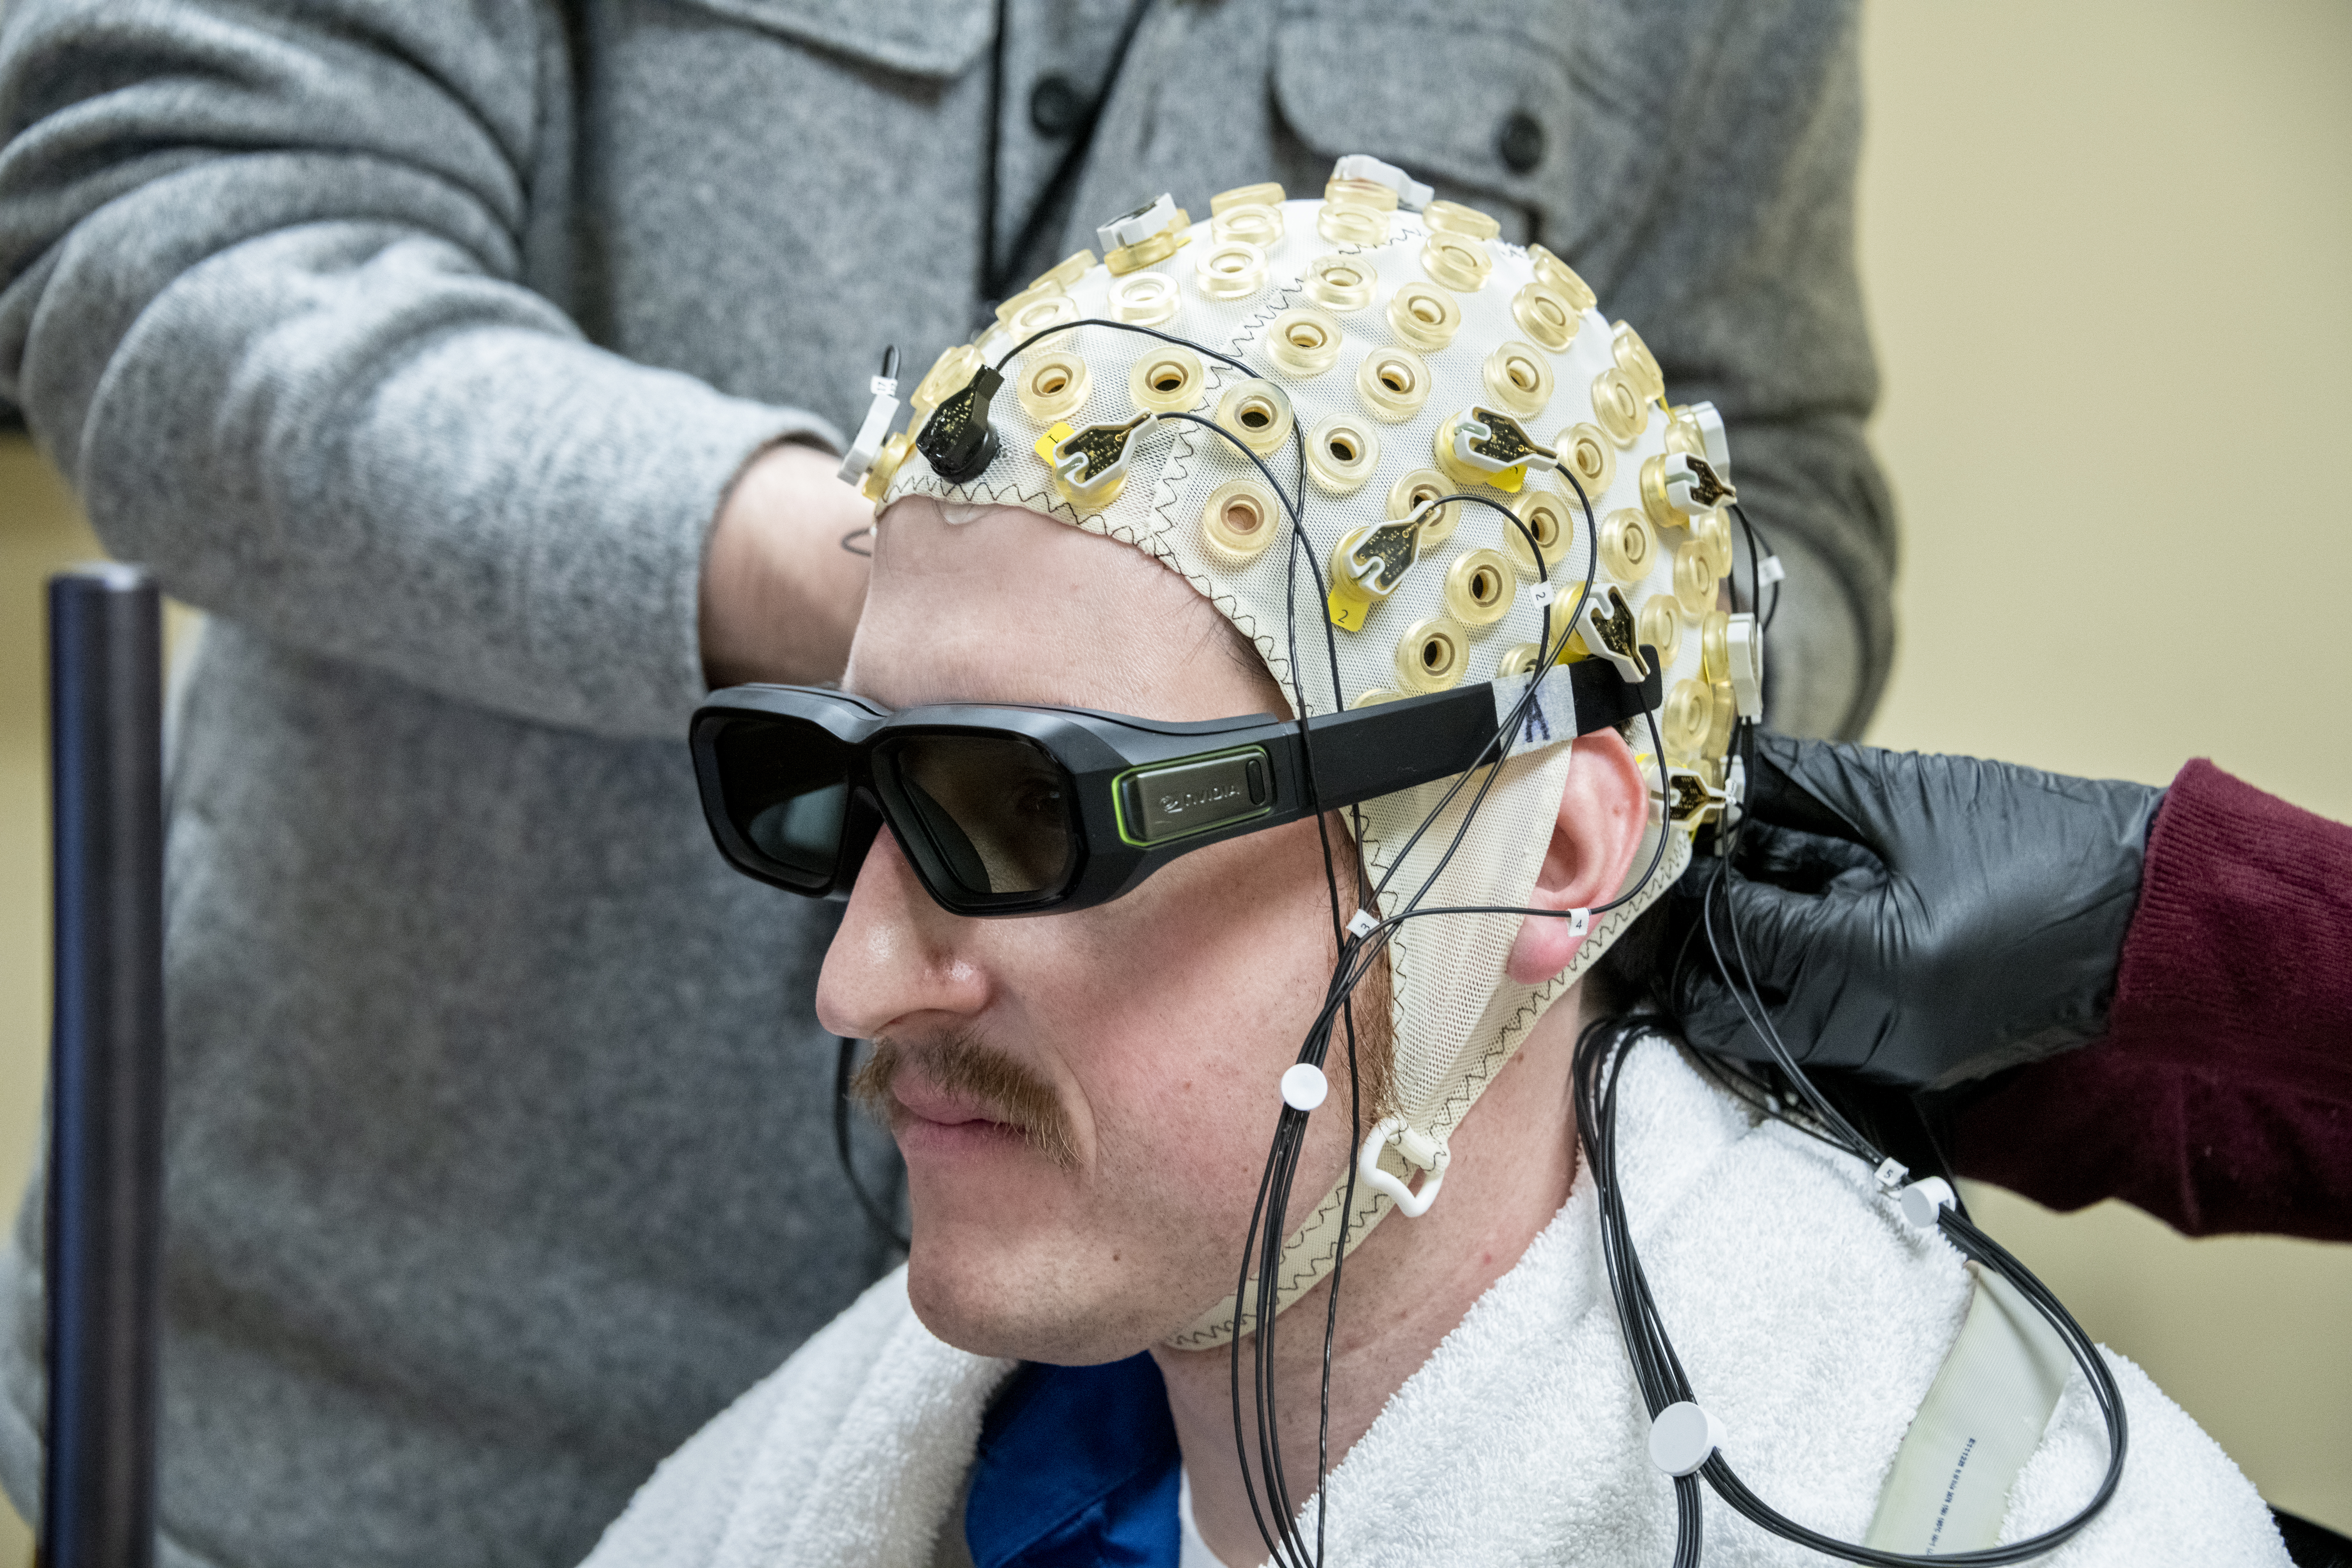 Michael-Paul Wearing EEG Cap